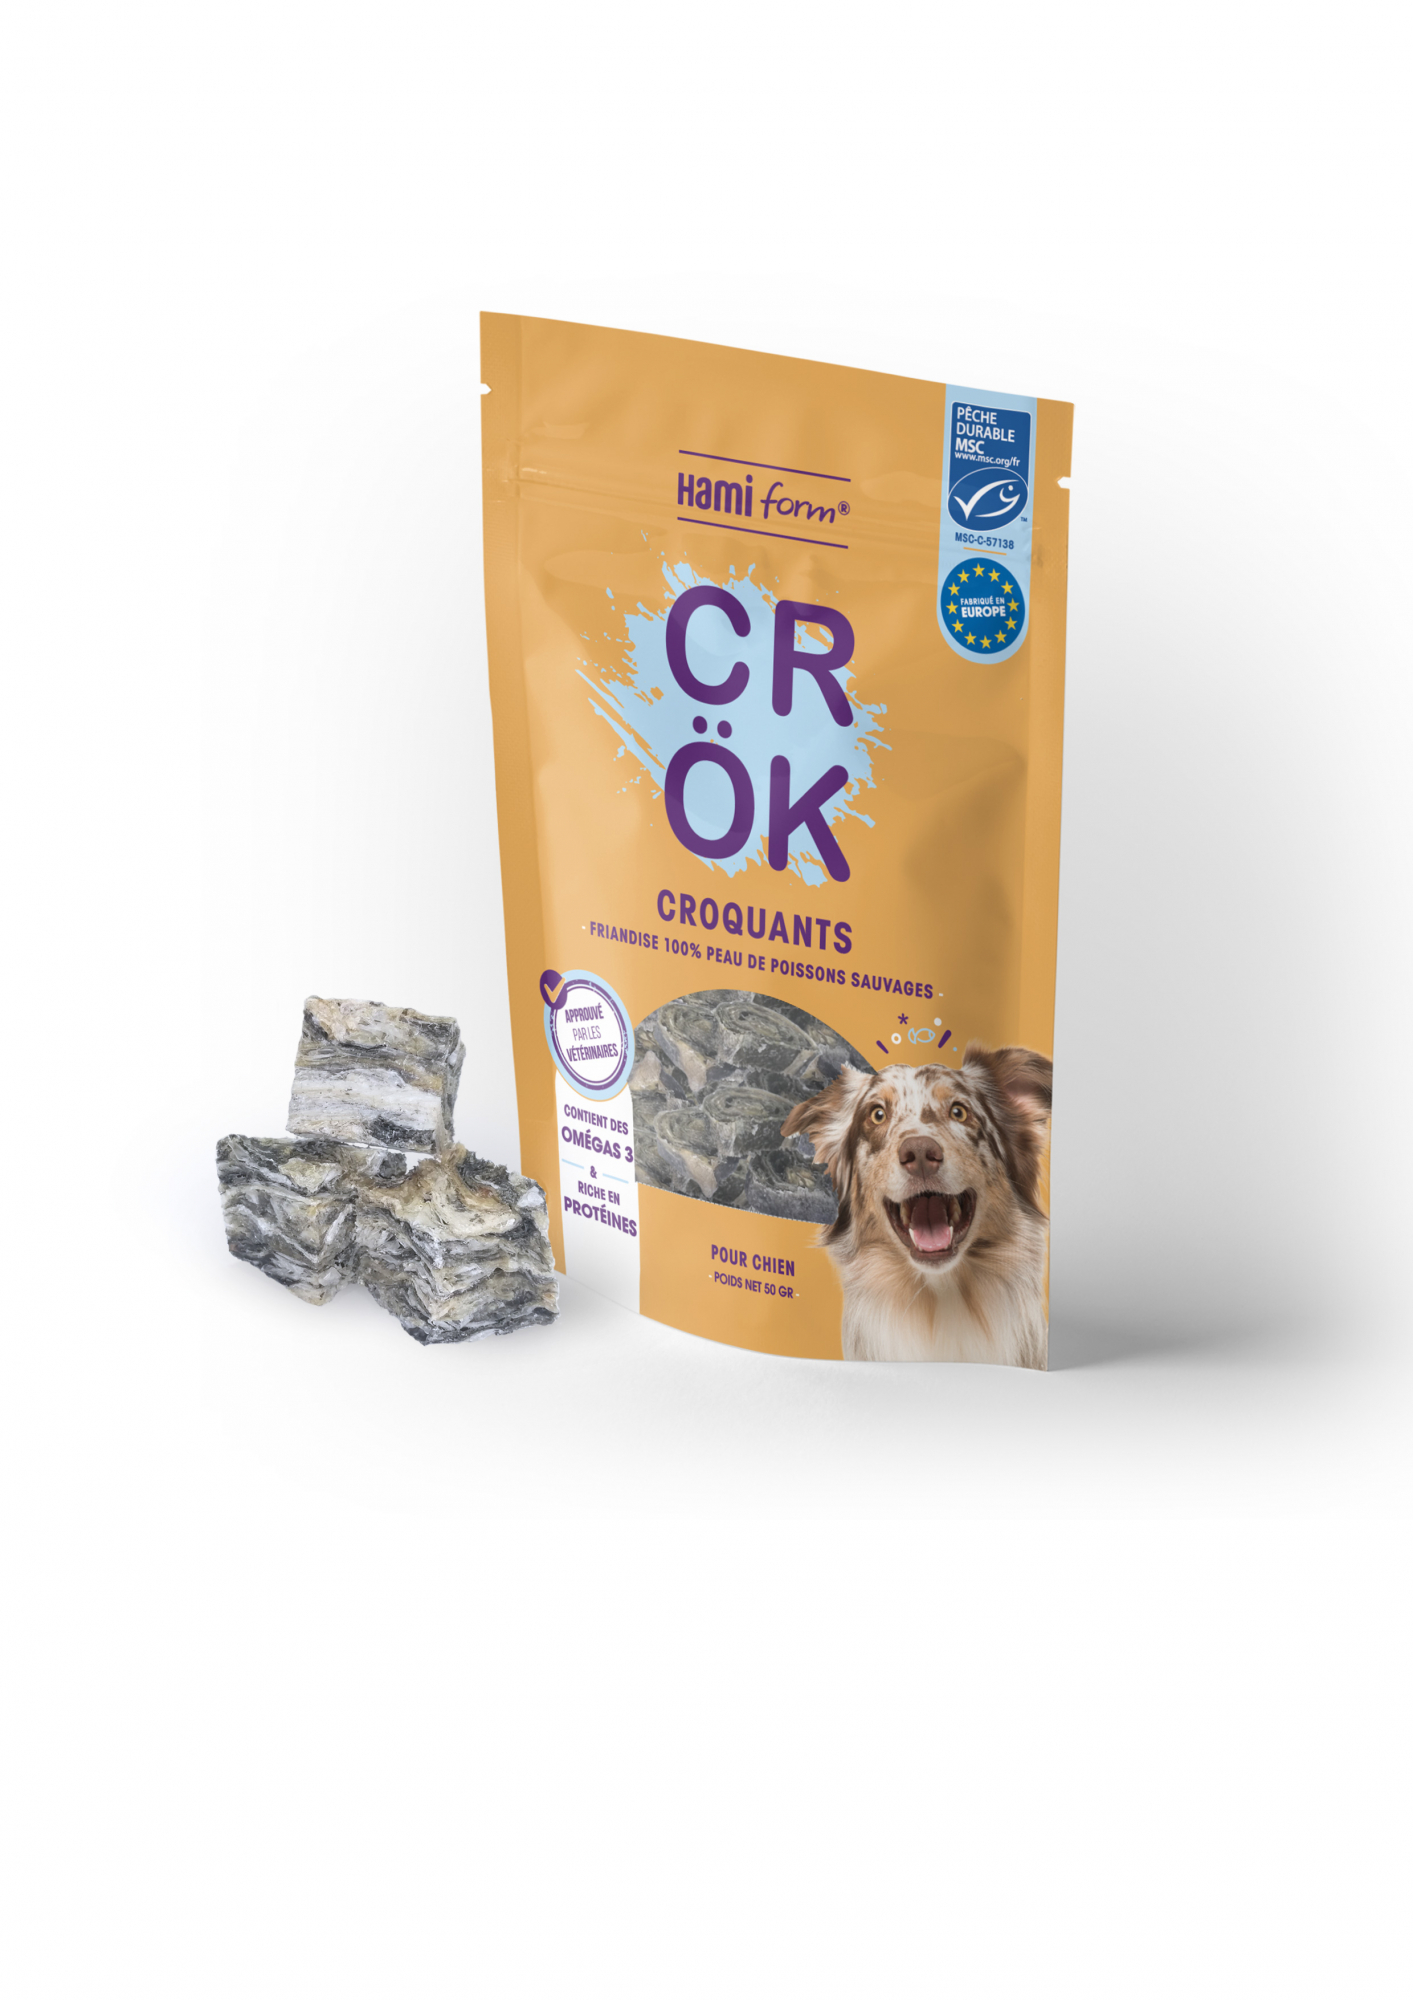 Snacks Crök 100% pele de peixes selvagens para cão